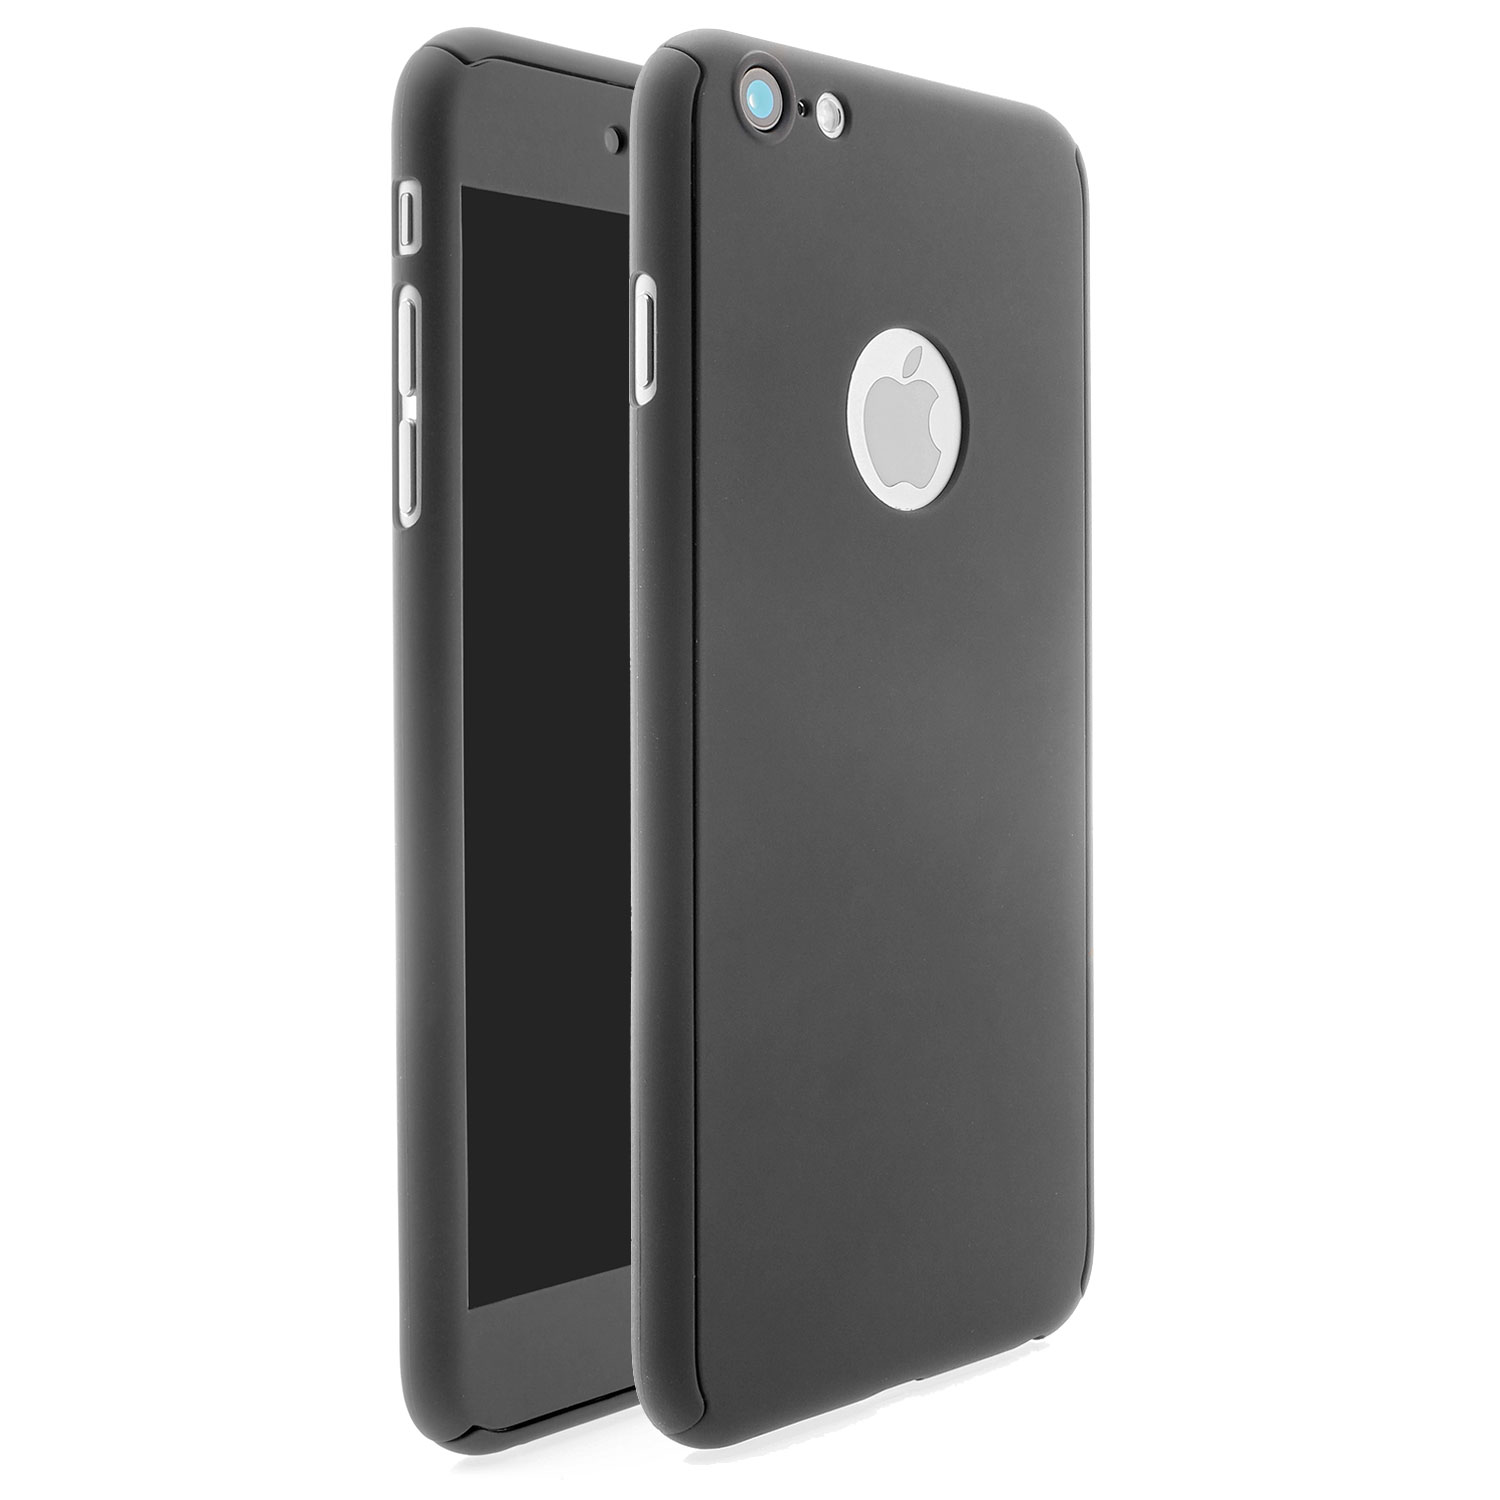 iPhone 6/6s Plus 360° Full Cover Schutzhülle mit Schutzglas in schwarz 